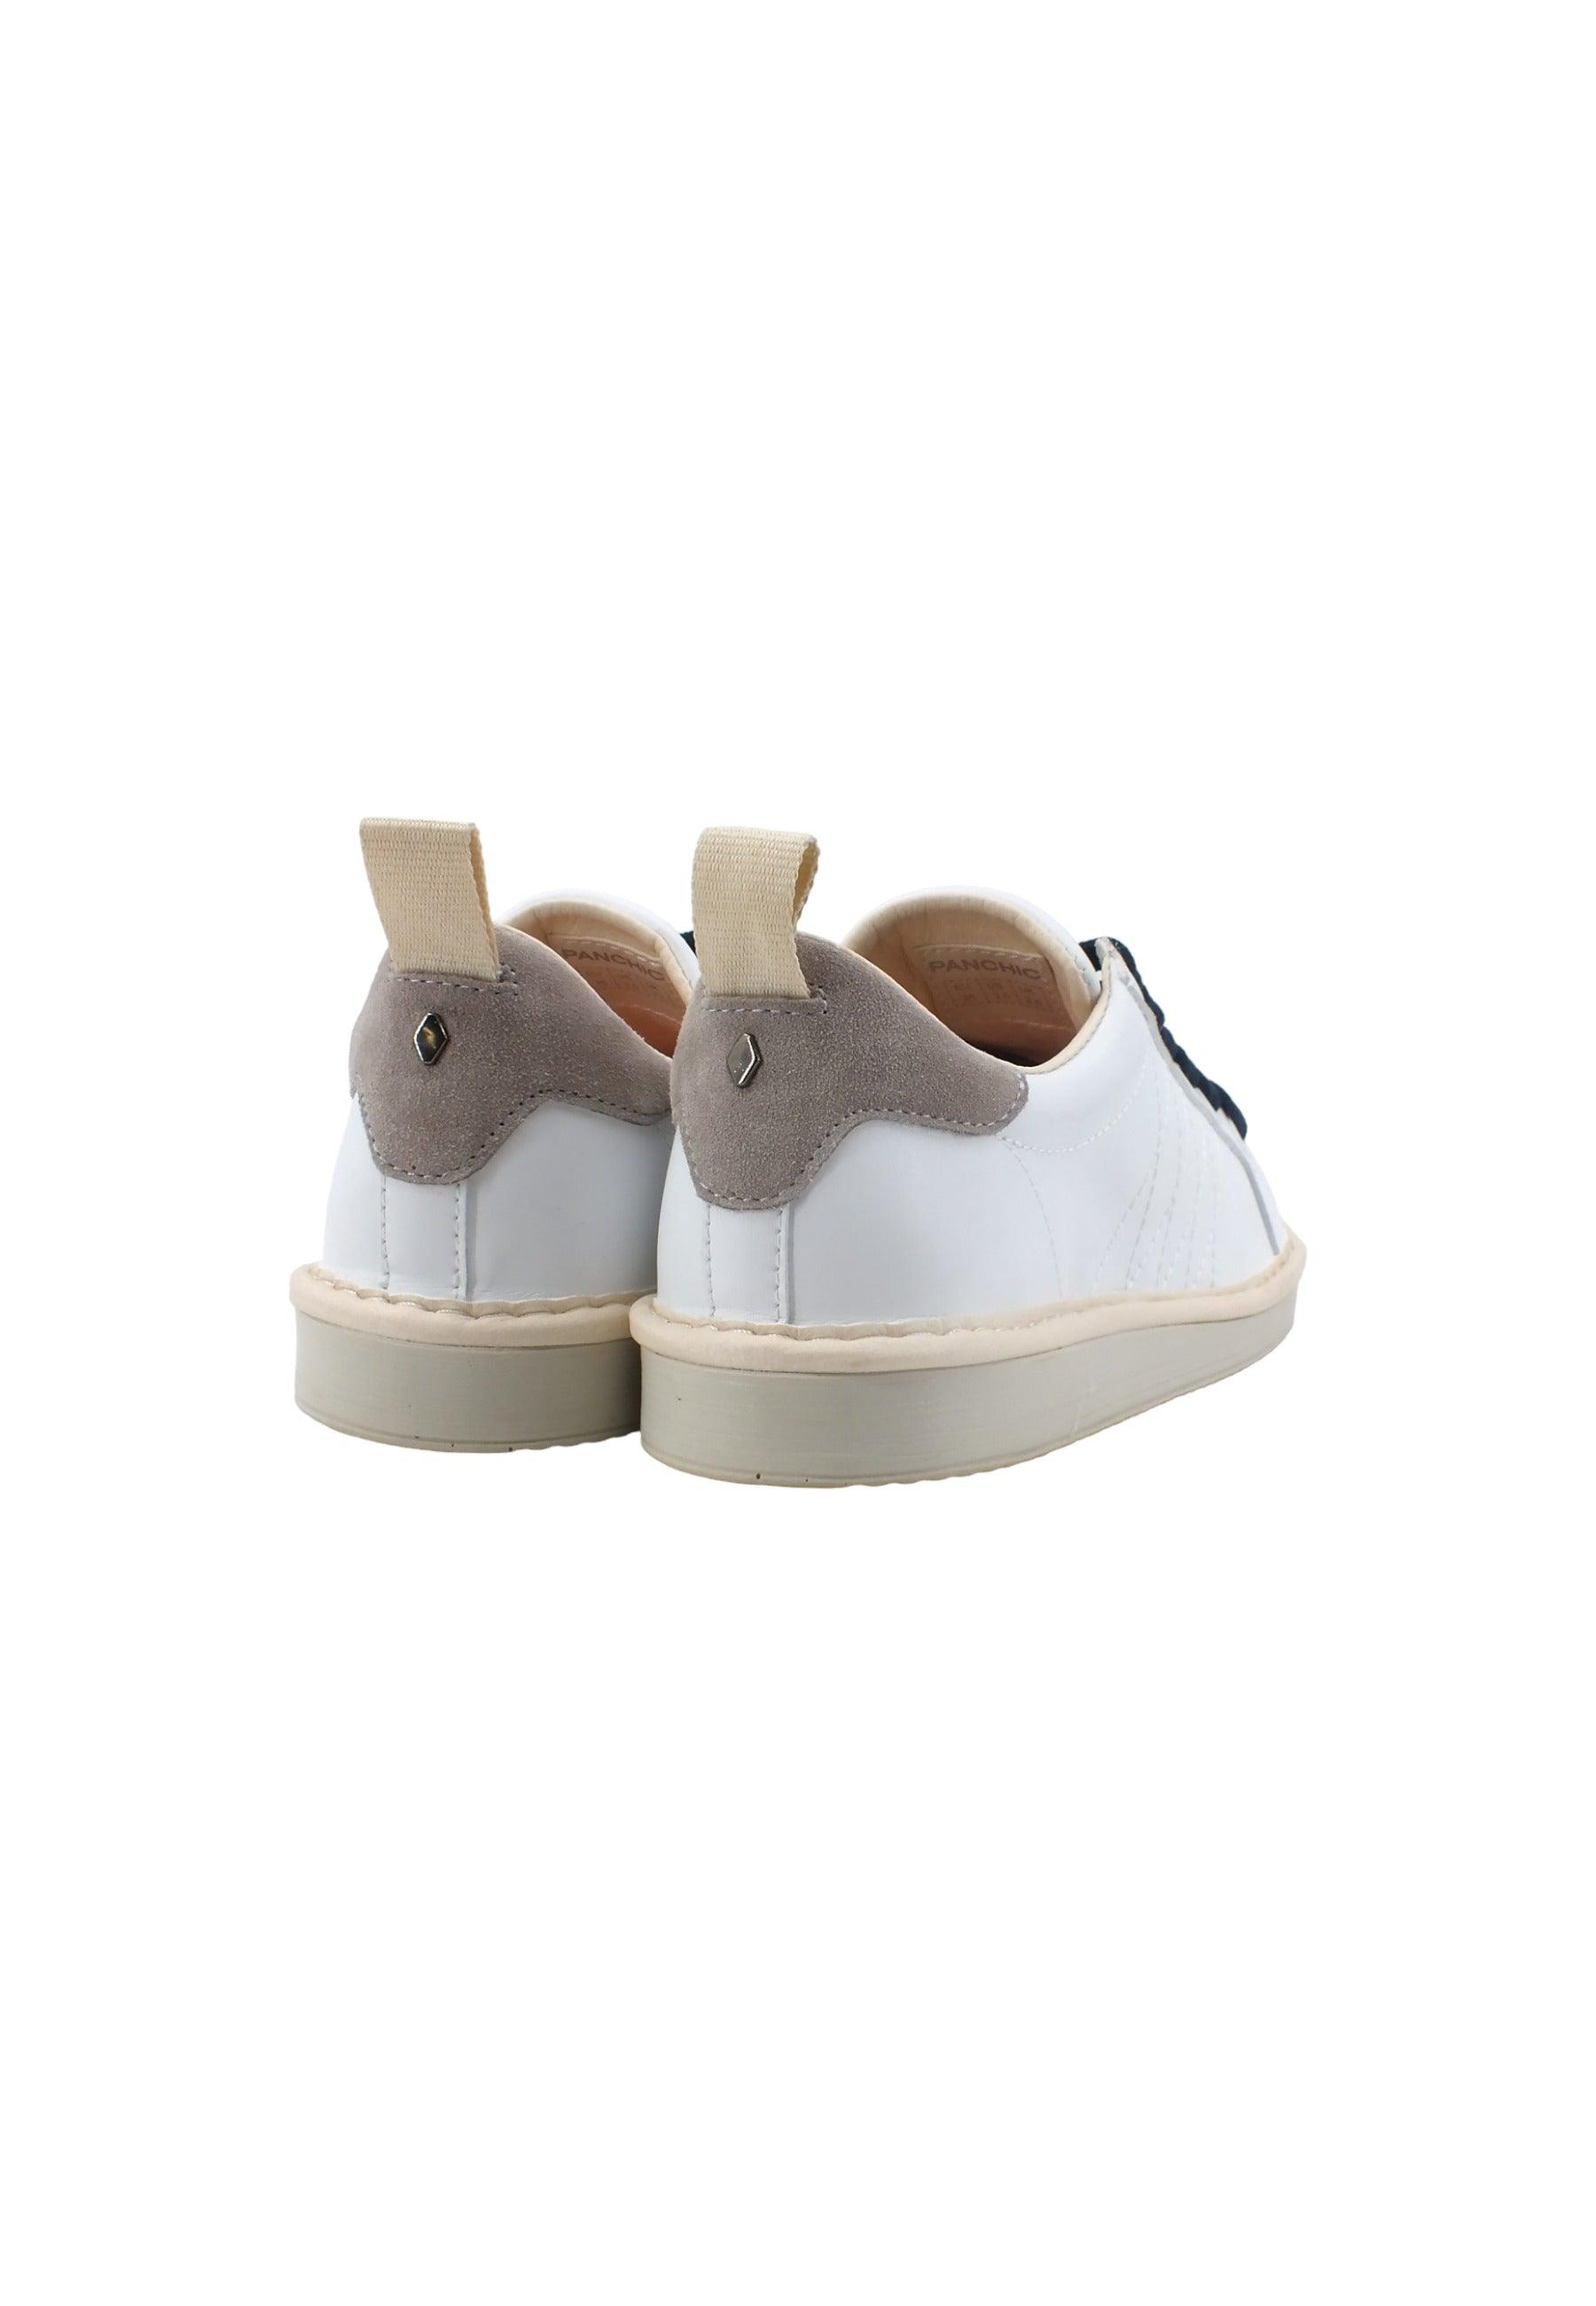 PAN CHIC Sneaker Bambino White Chilli P01K00200243001 - Sandrini Calzature e Abbigliamento